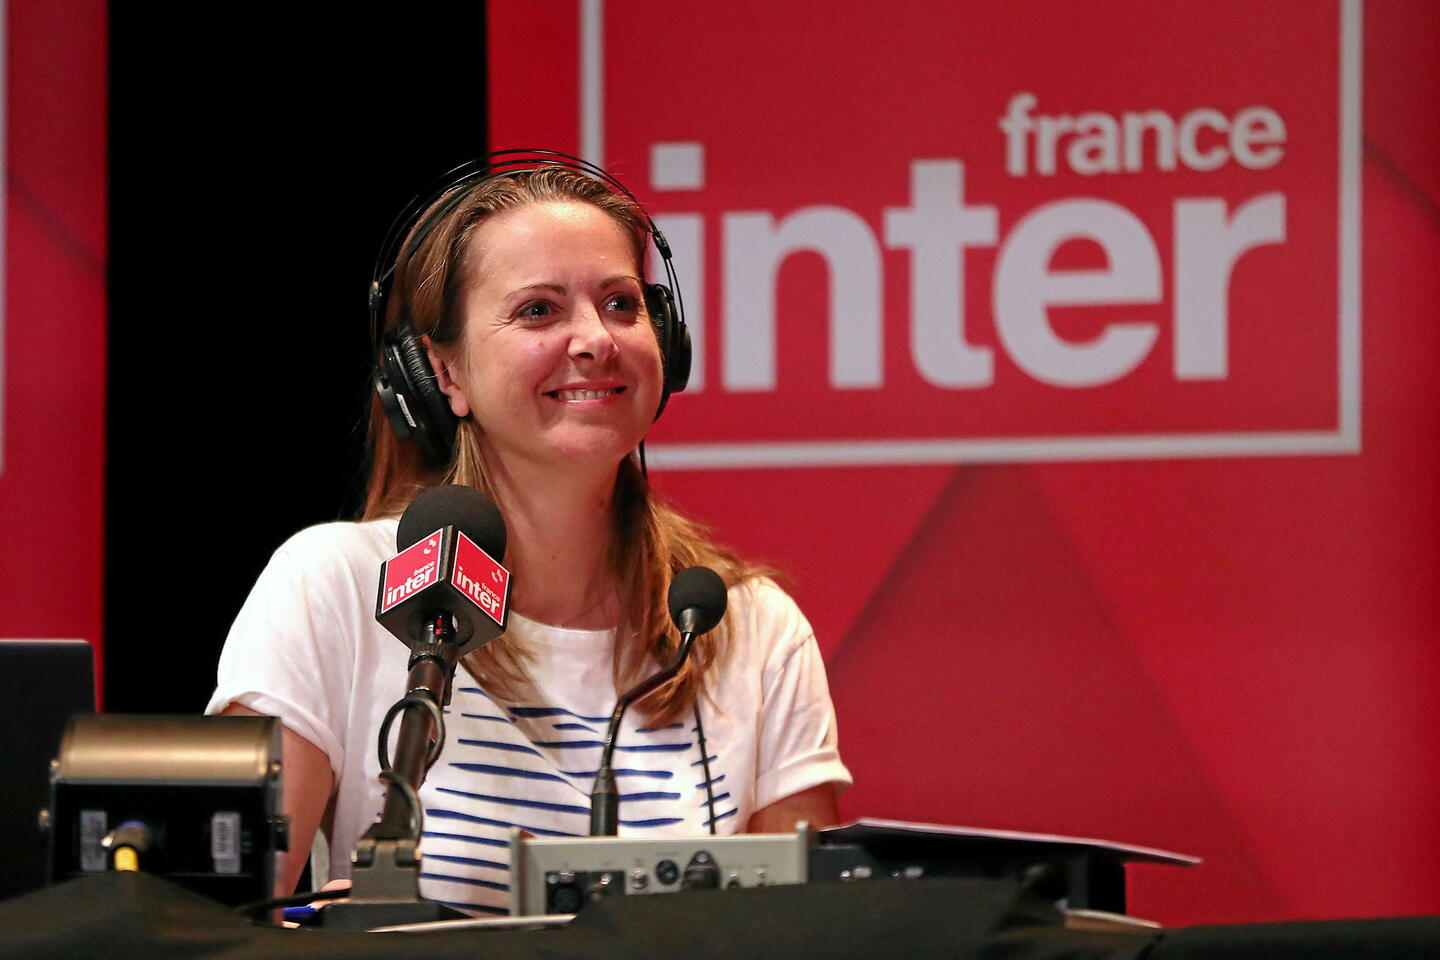 france inter : charline vanhoenacker consacre son émission à guillaume meurice